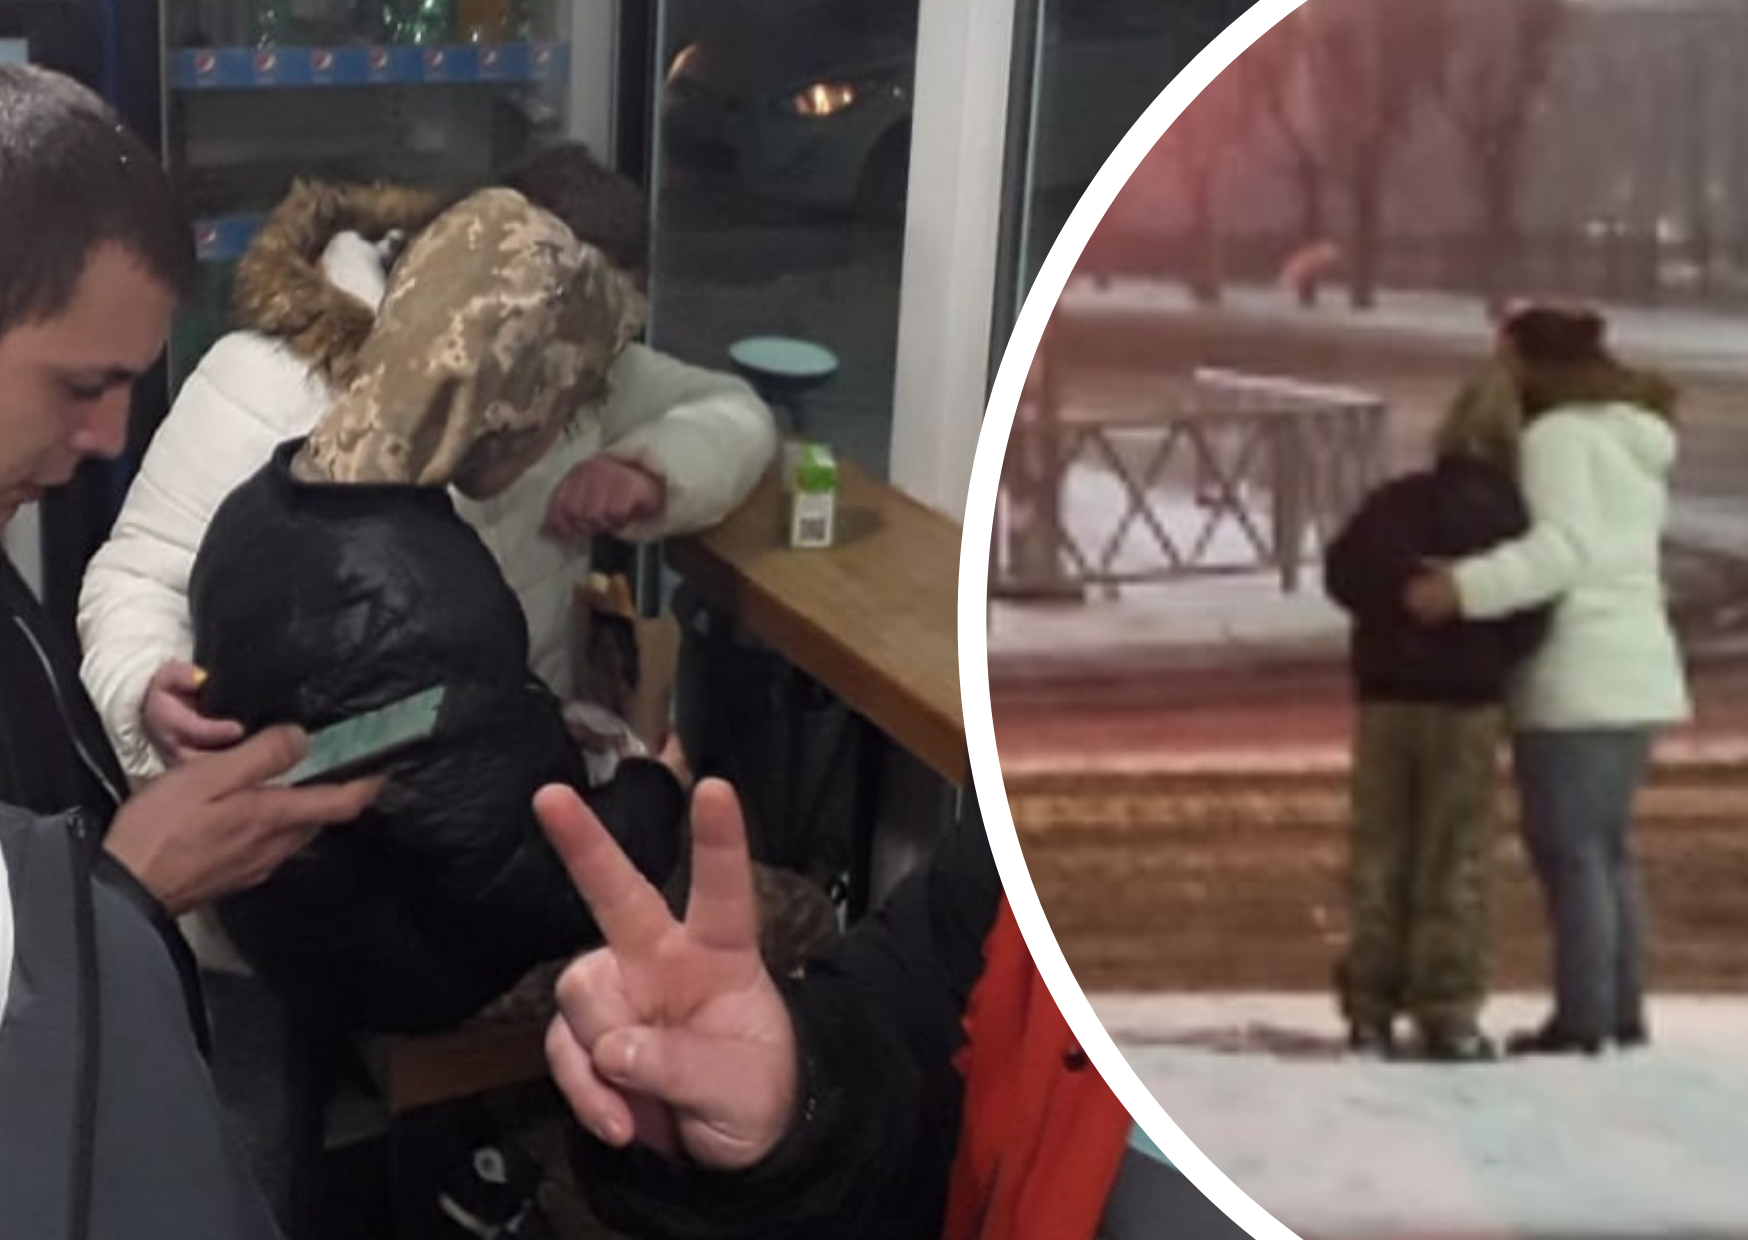 "Достучались даже до Макдональдса": в Ярославле ночью нашли живым замёрзшего мальчика 